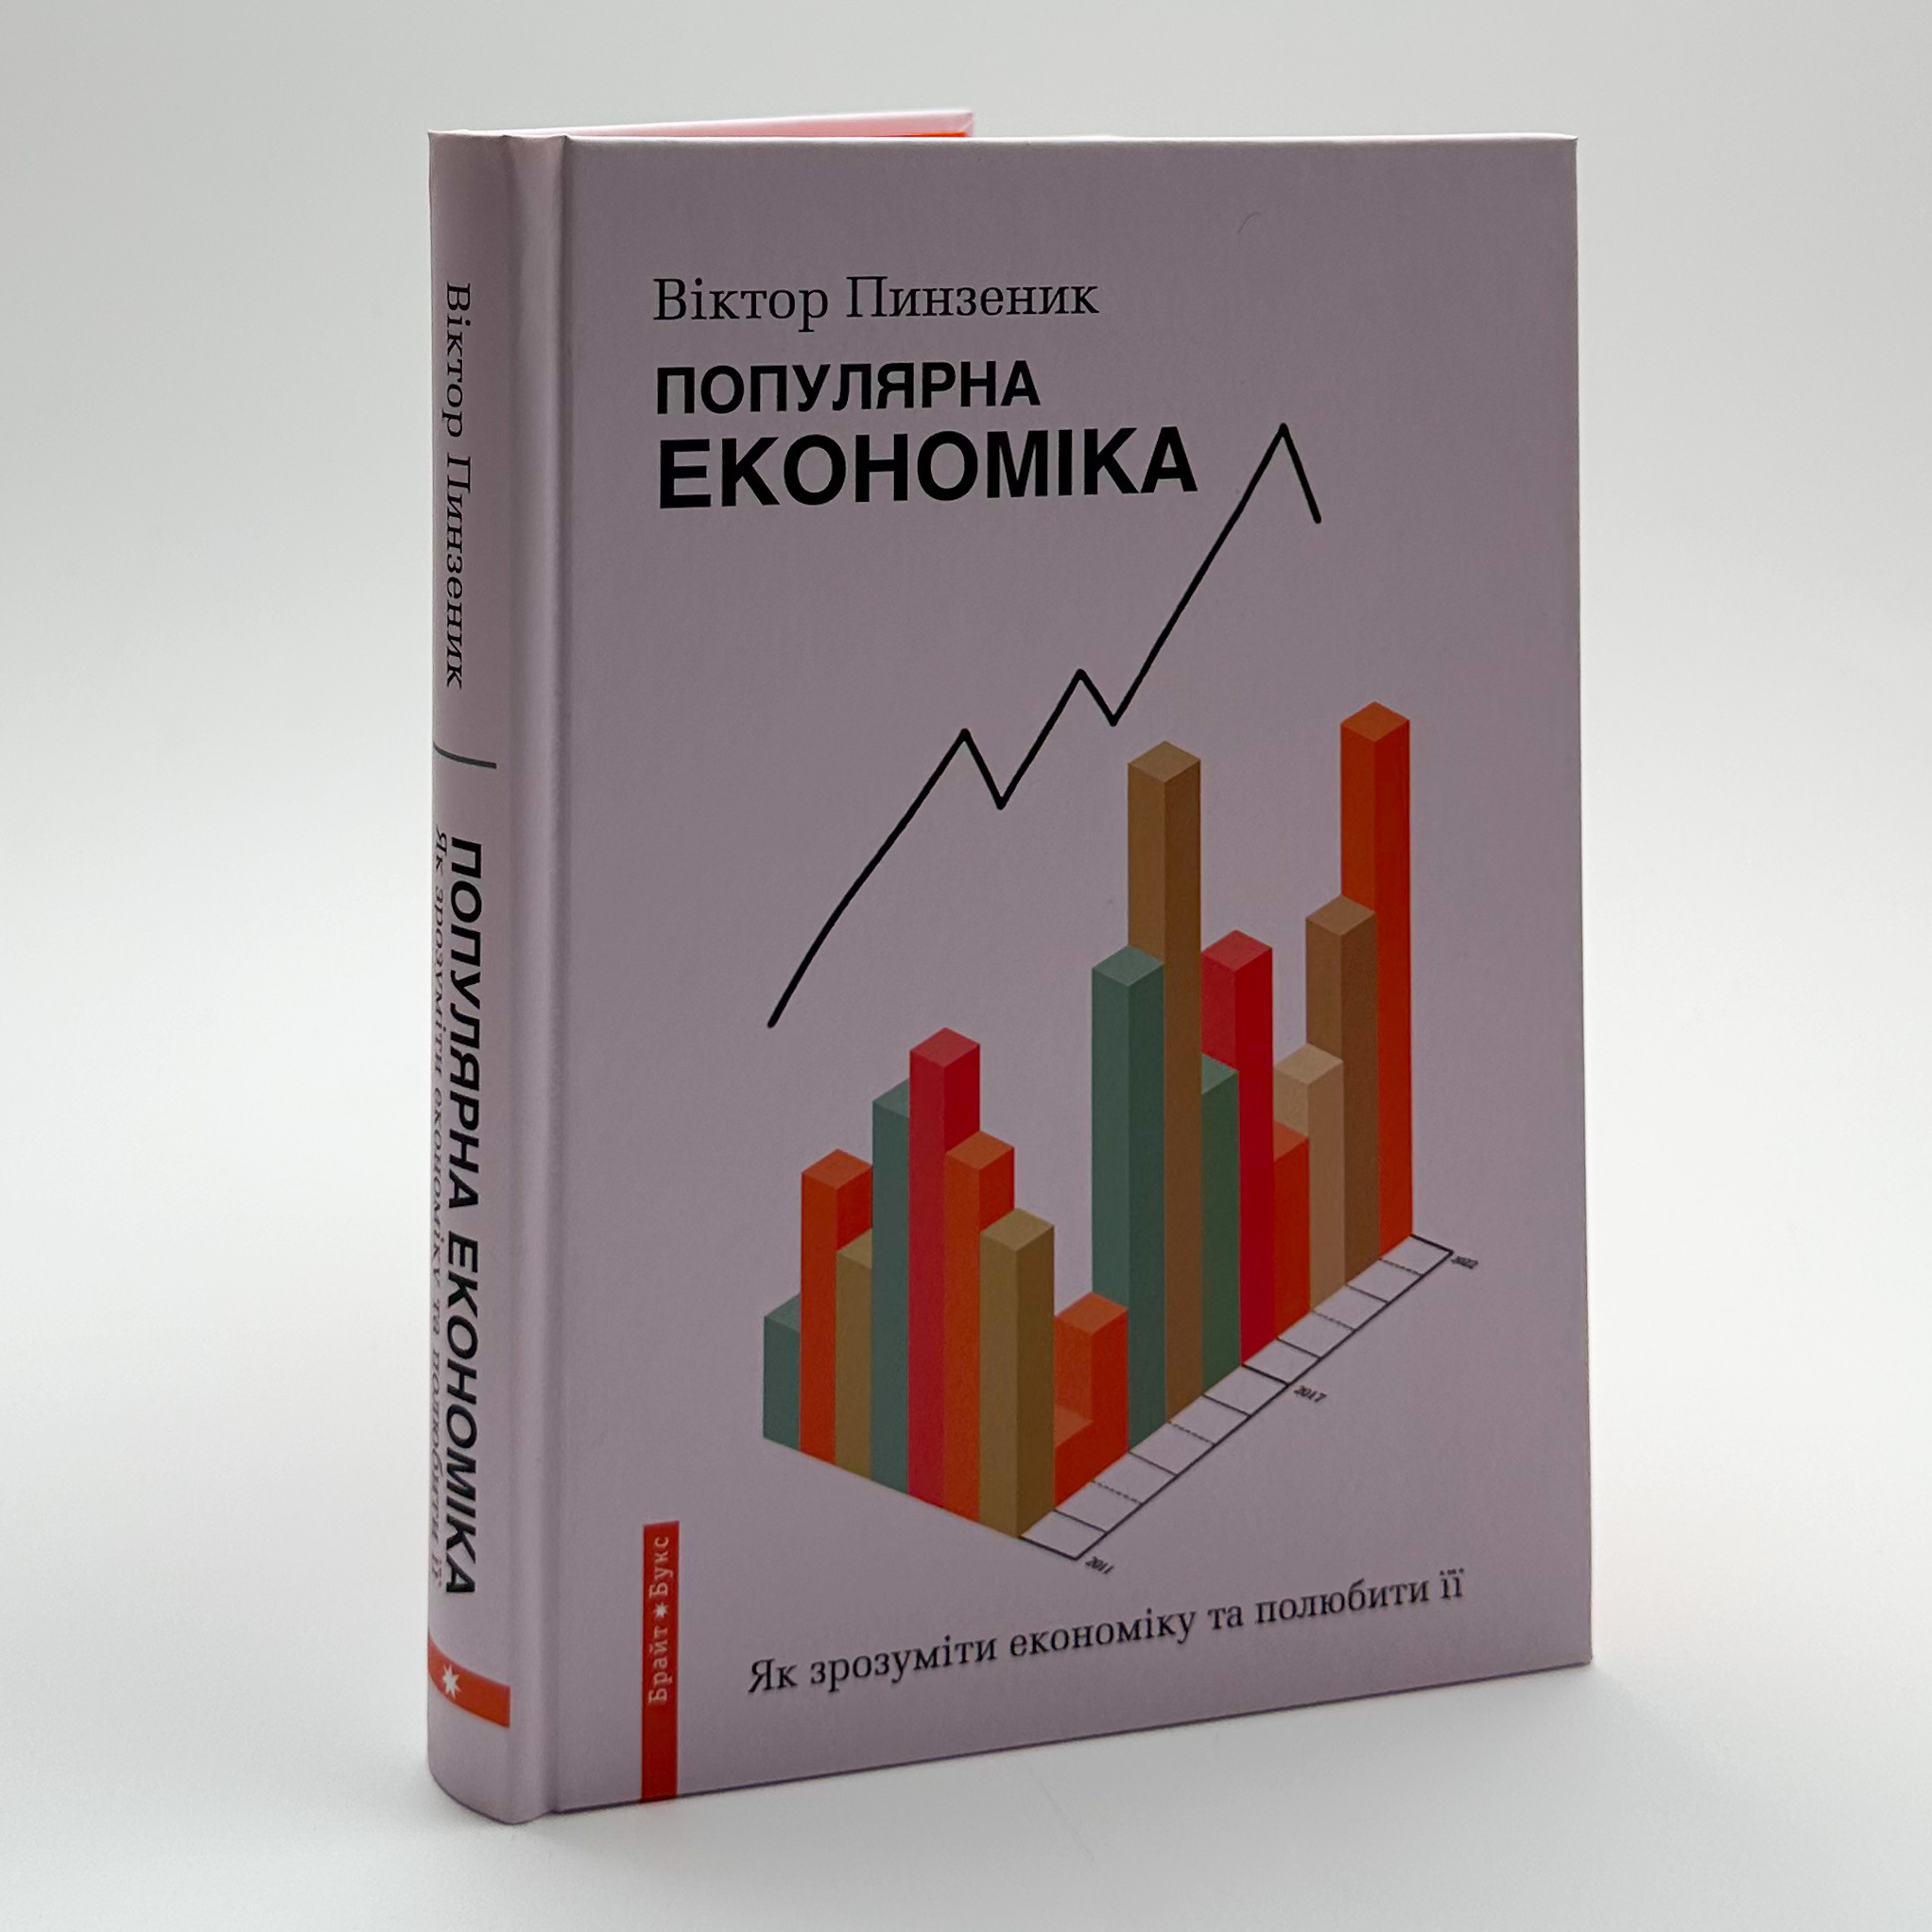 Популярна Економіка. Як зрозуміти економіку та полюбити її. Автор — Віктор Пинзеник. 